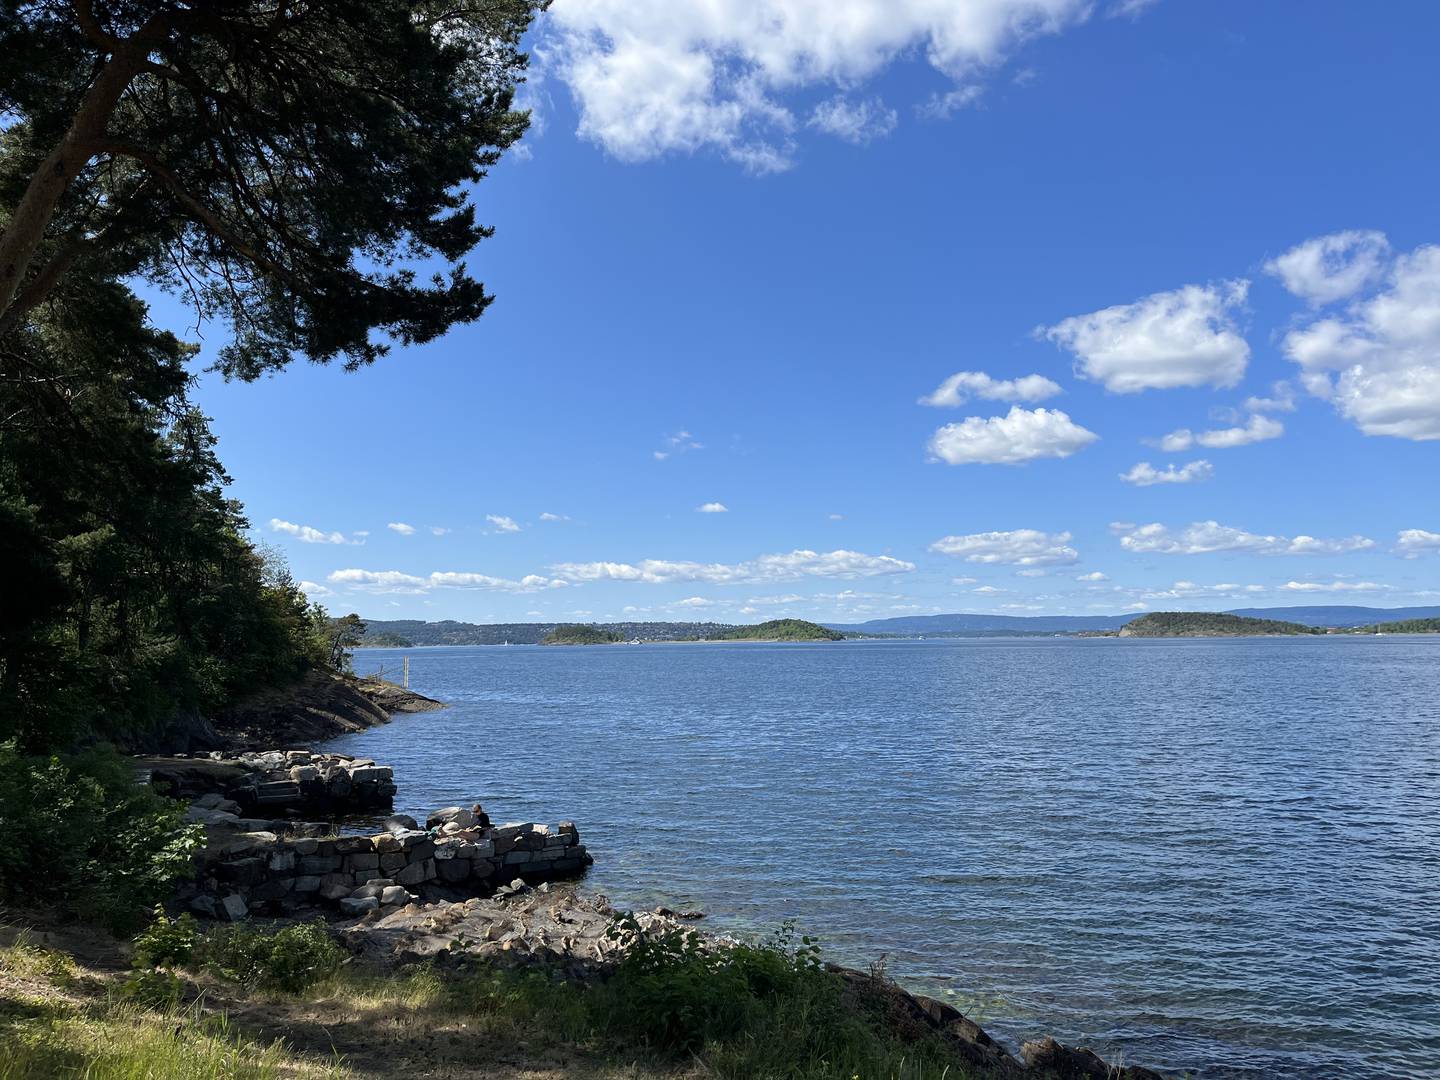 Ormøyas kommunale områder kan brukes av alle. Kommunen er i dialog med bymiljøetaten om skilting.
Et blått hav som strekker seg langt ut fra stranden, som er mer stein enn sandstrand. På et utstikkende berg sitter en jente å leser.